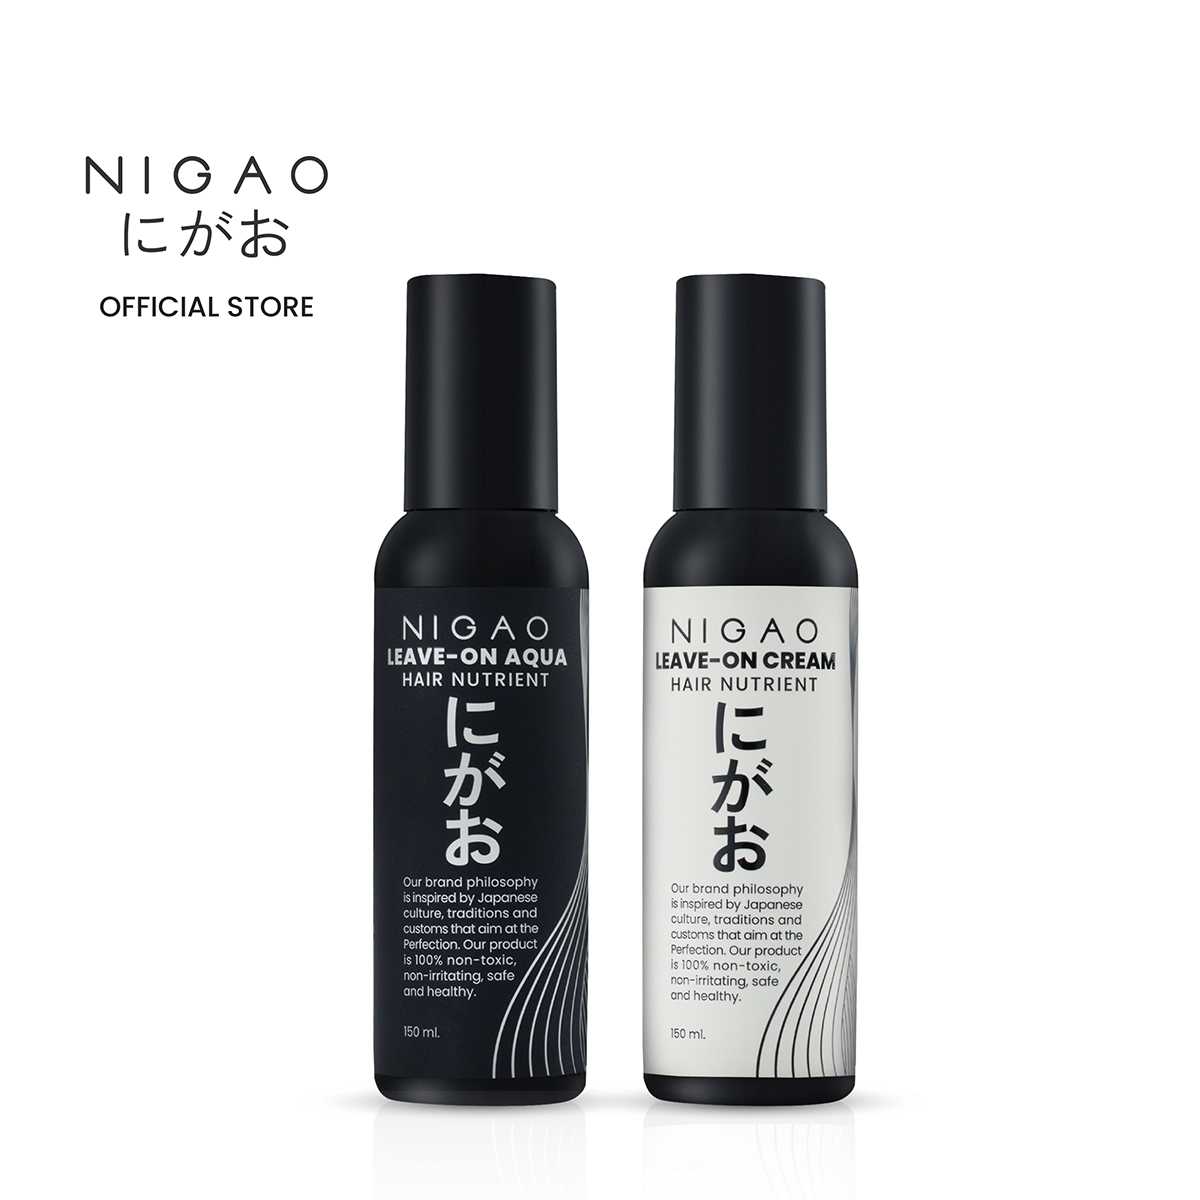 ซื้อคู่ถูกกว่า NIGAO Hair Nutrient Leave-on Aqua+Cream 150ml.